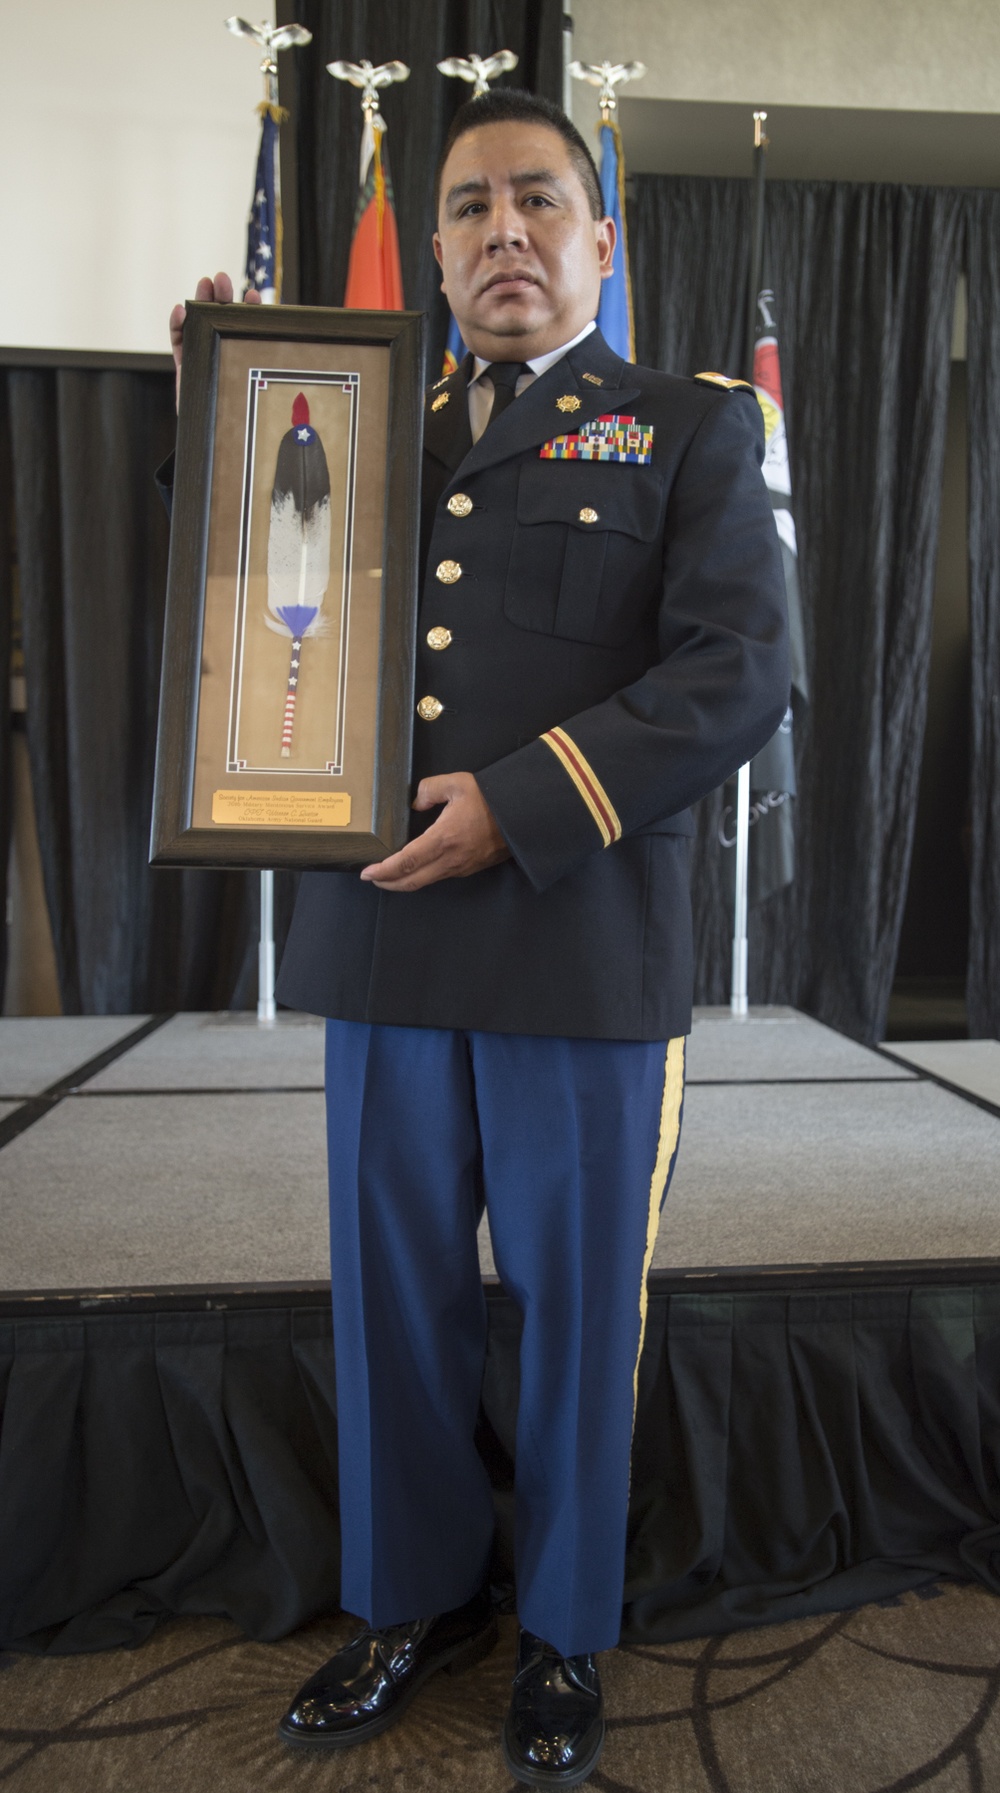 Oklahoma Guardsman receives prestigious SAIGE award